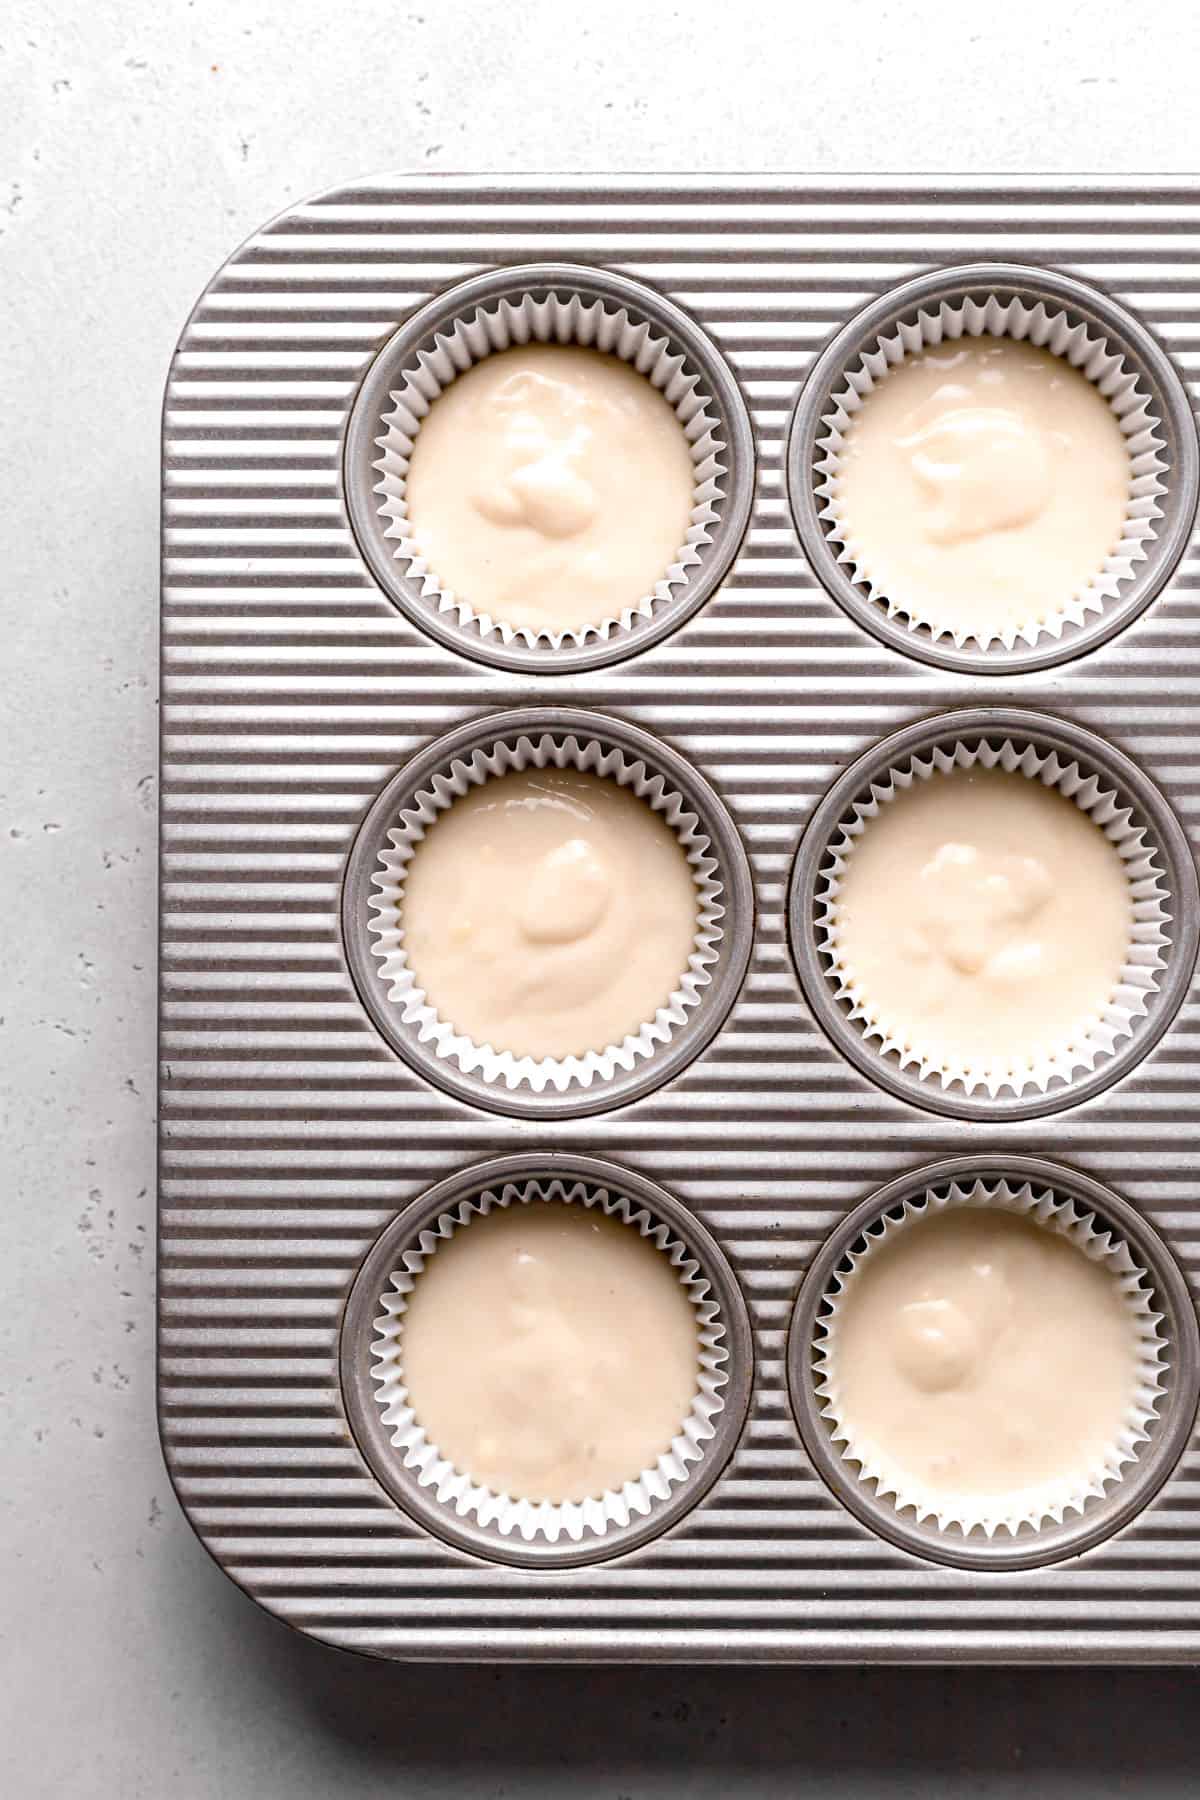 cupcake batter in pan.